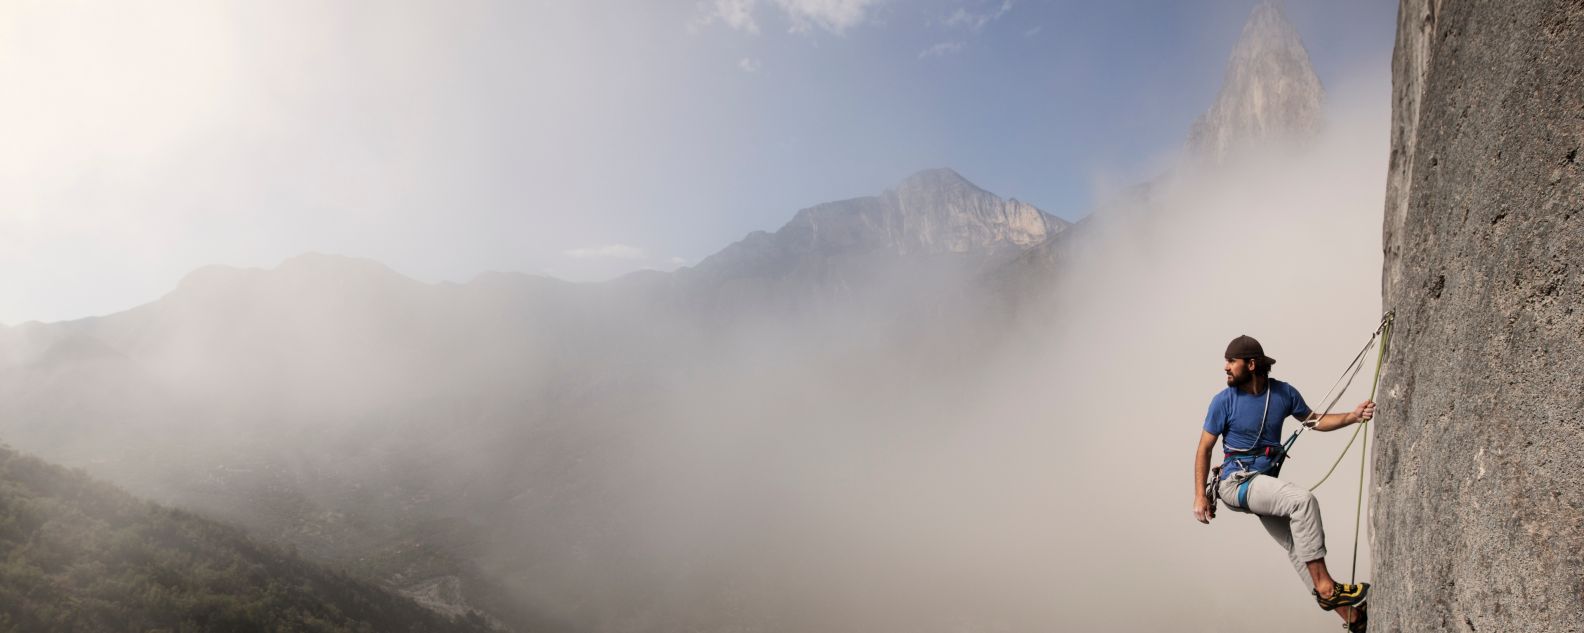 Mann allein, Nebel und Berge im Hintergrund, ruht sich auf seinem Aufstieg aus